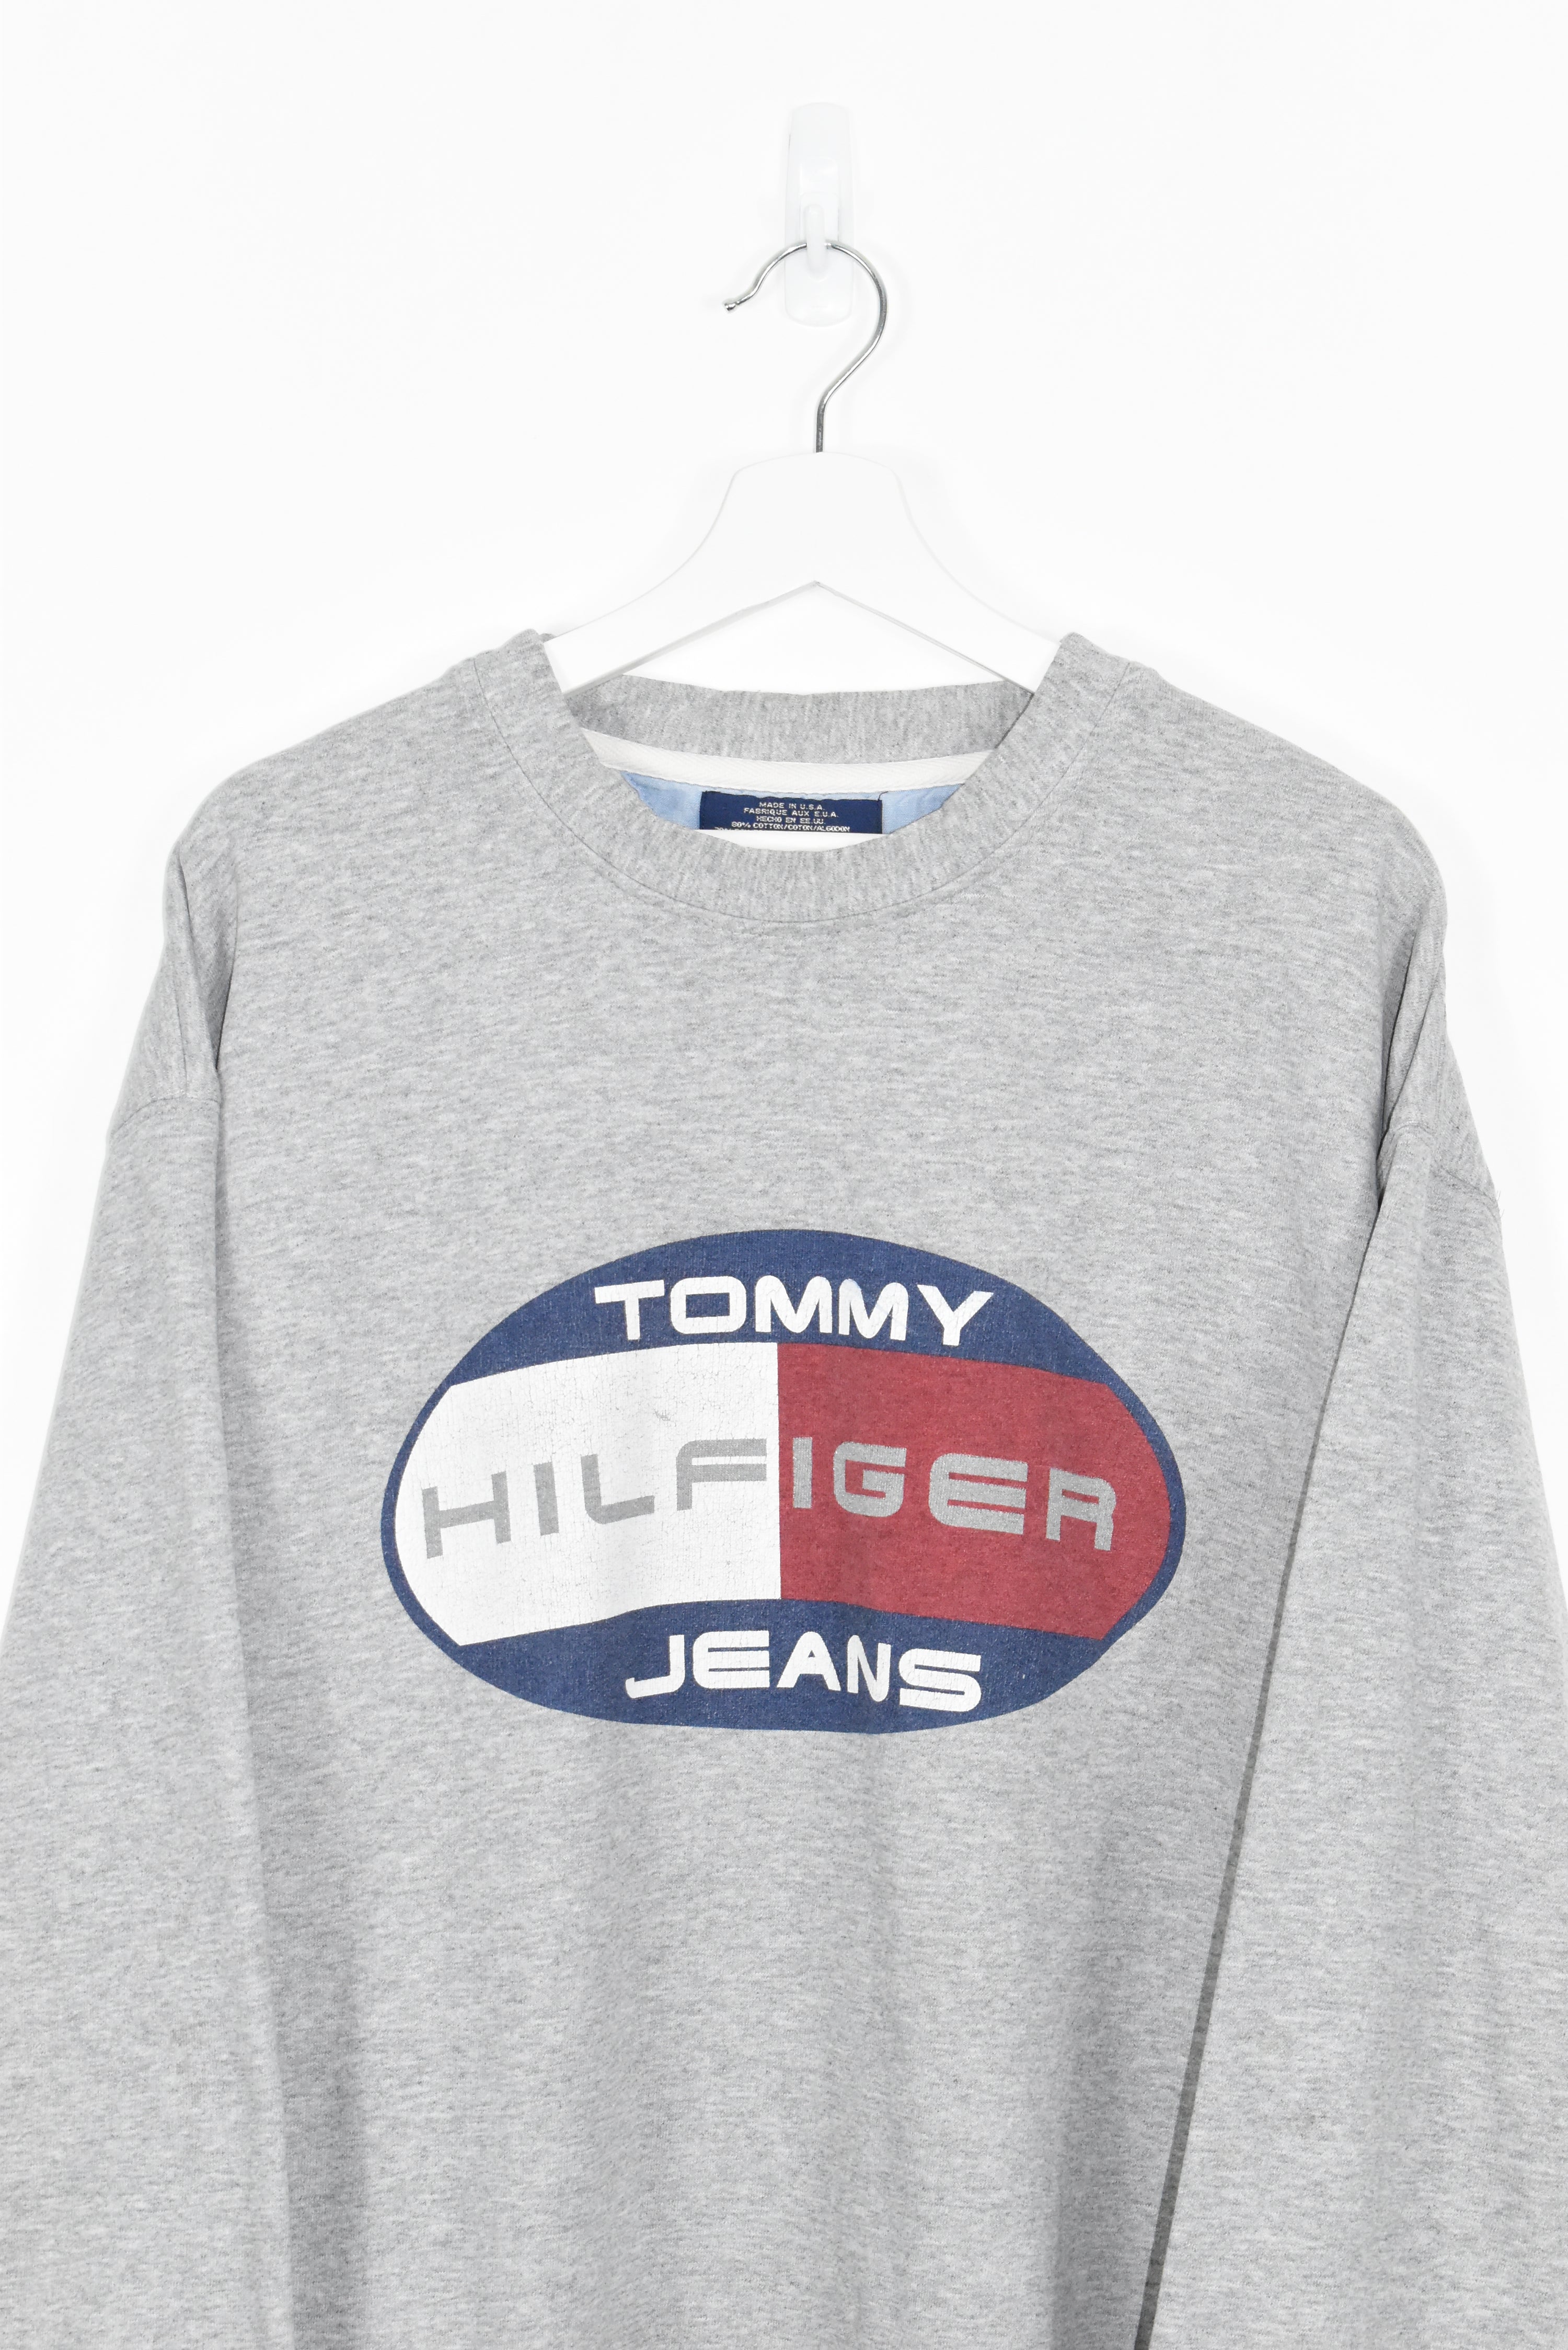 Vintage Tommy Hilfiger Center Logo Sweatshirt XXL